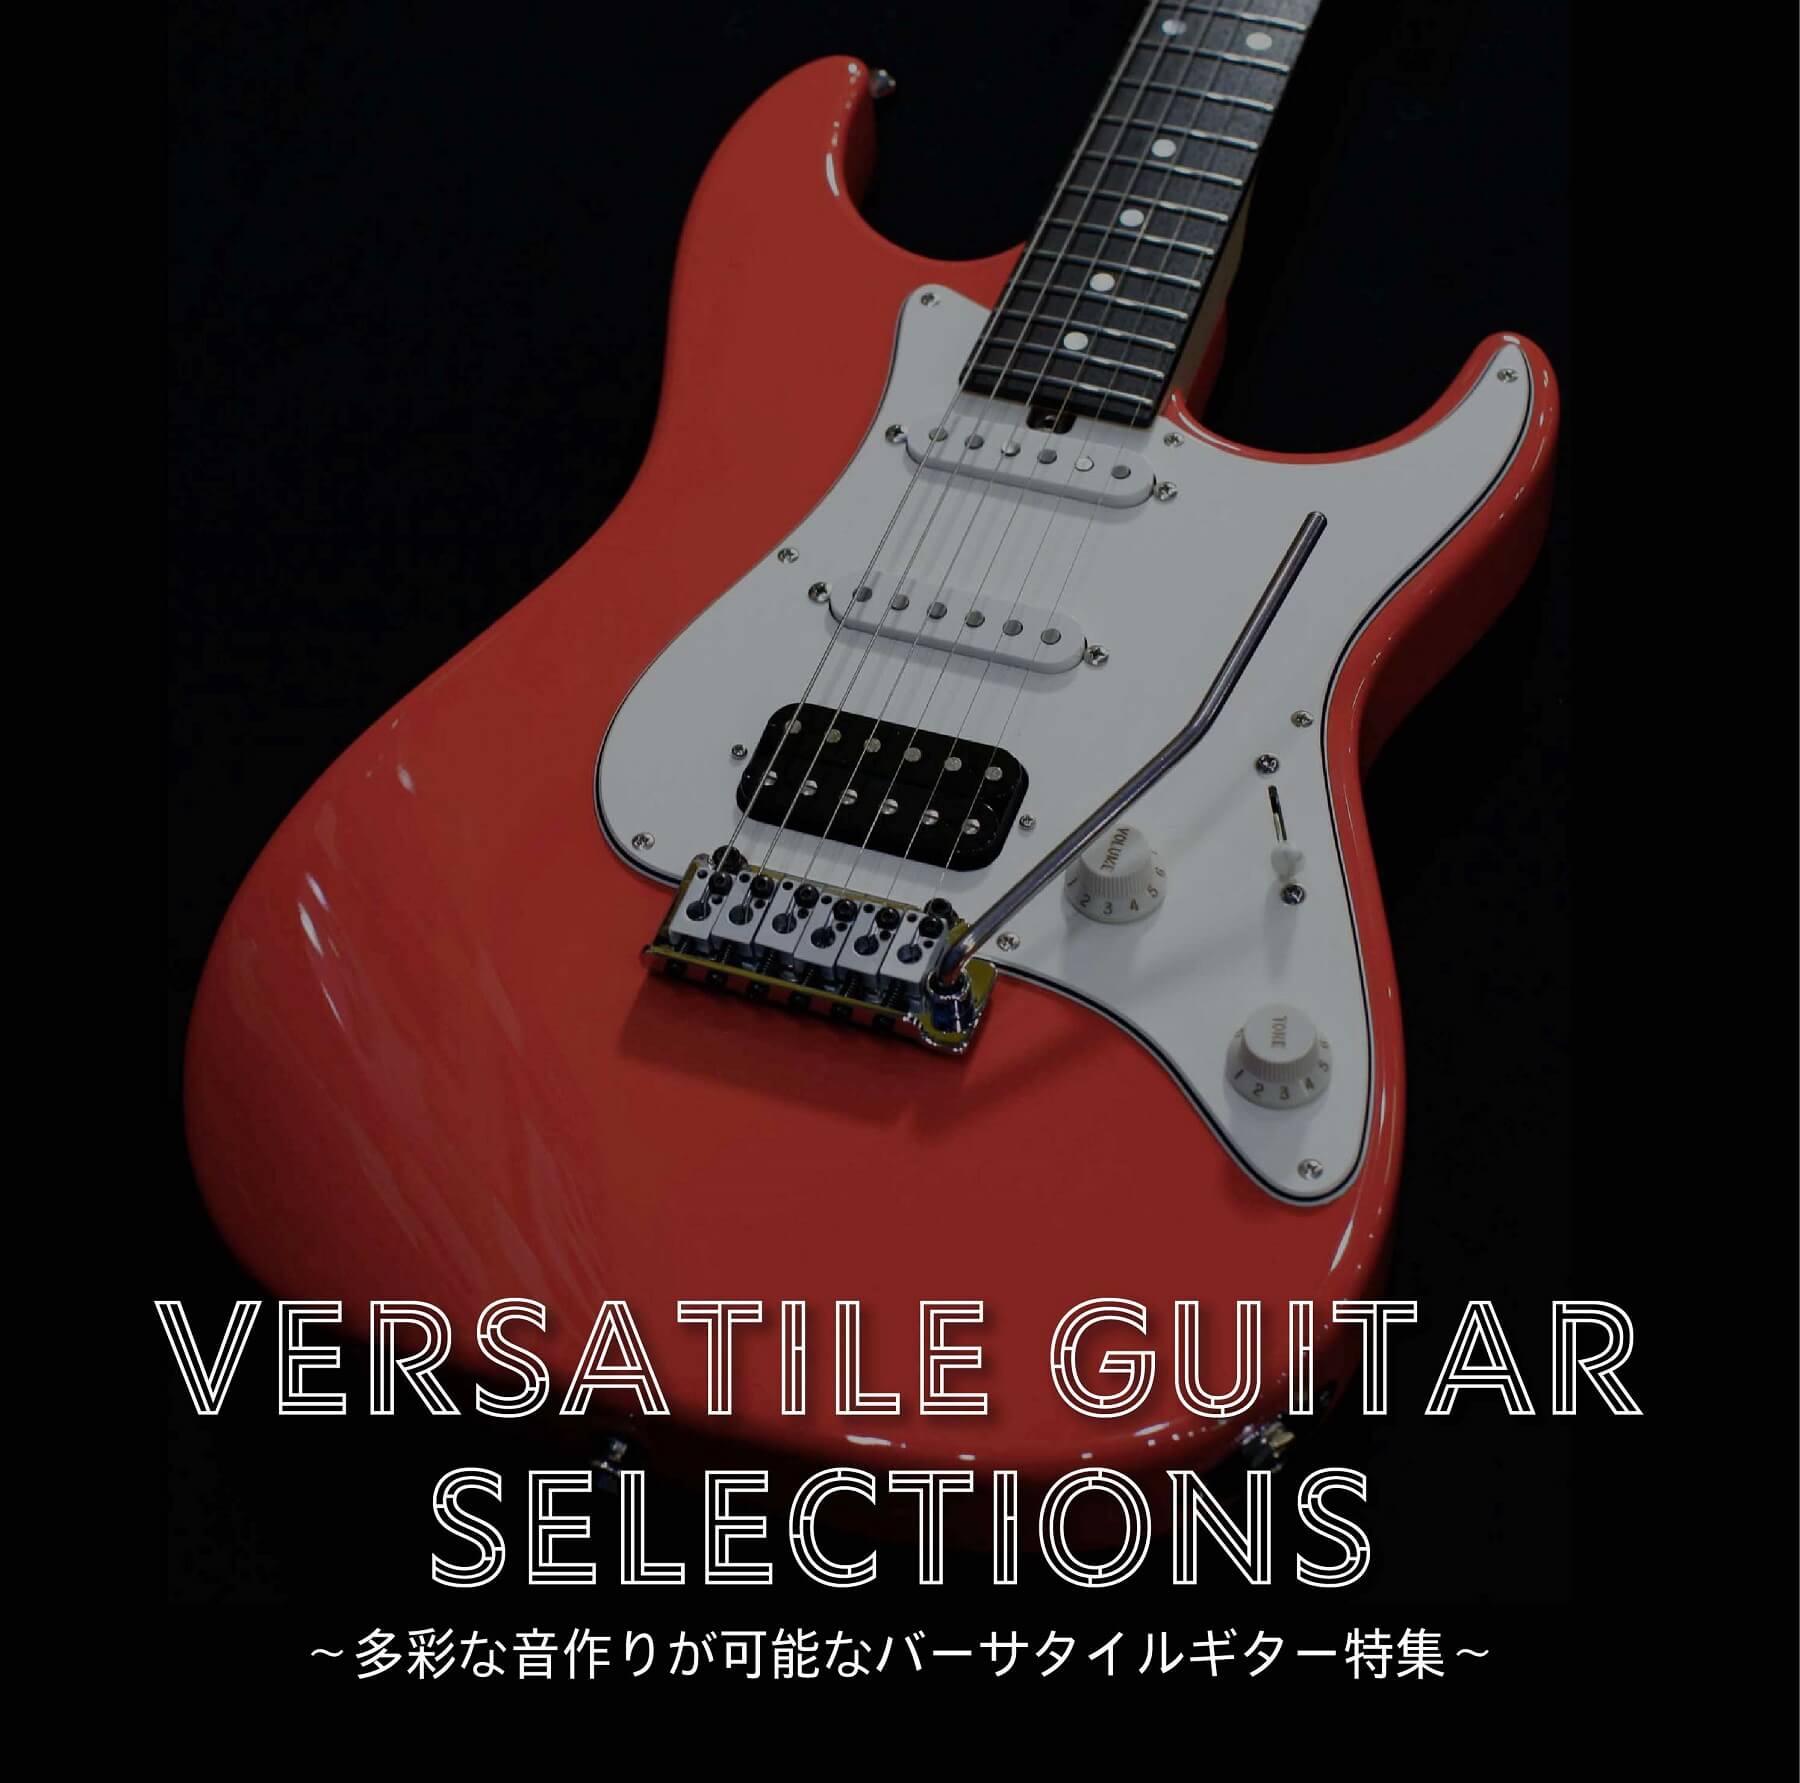 【ブログ】バーサタイルってどんなギター?